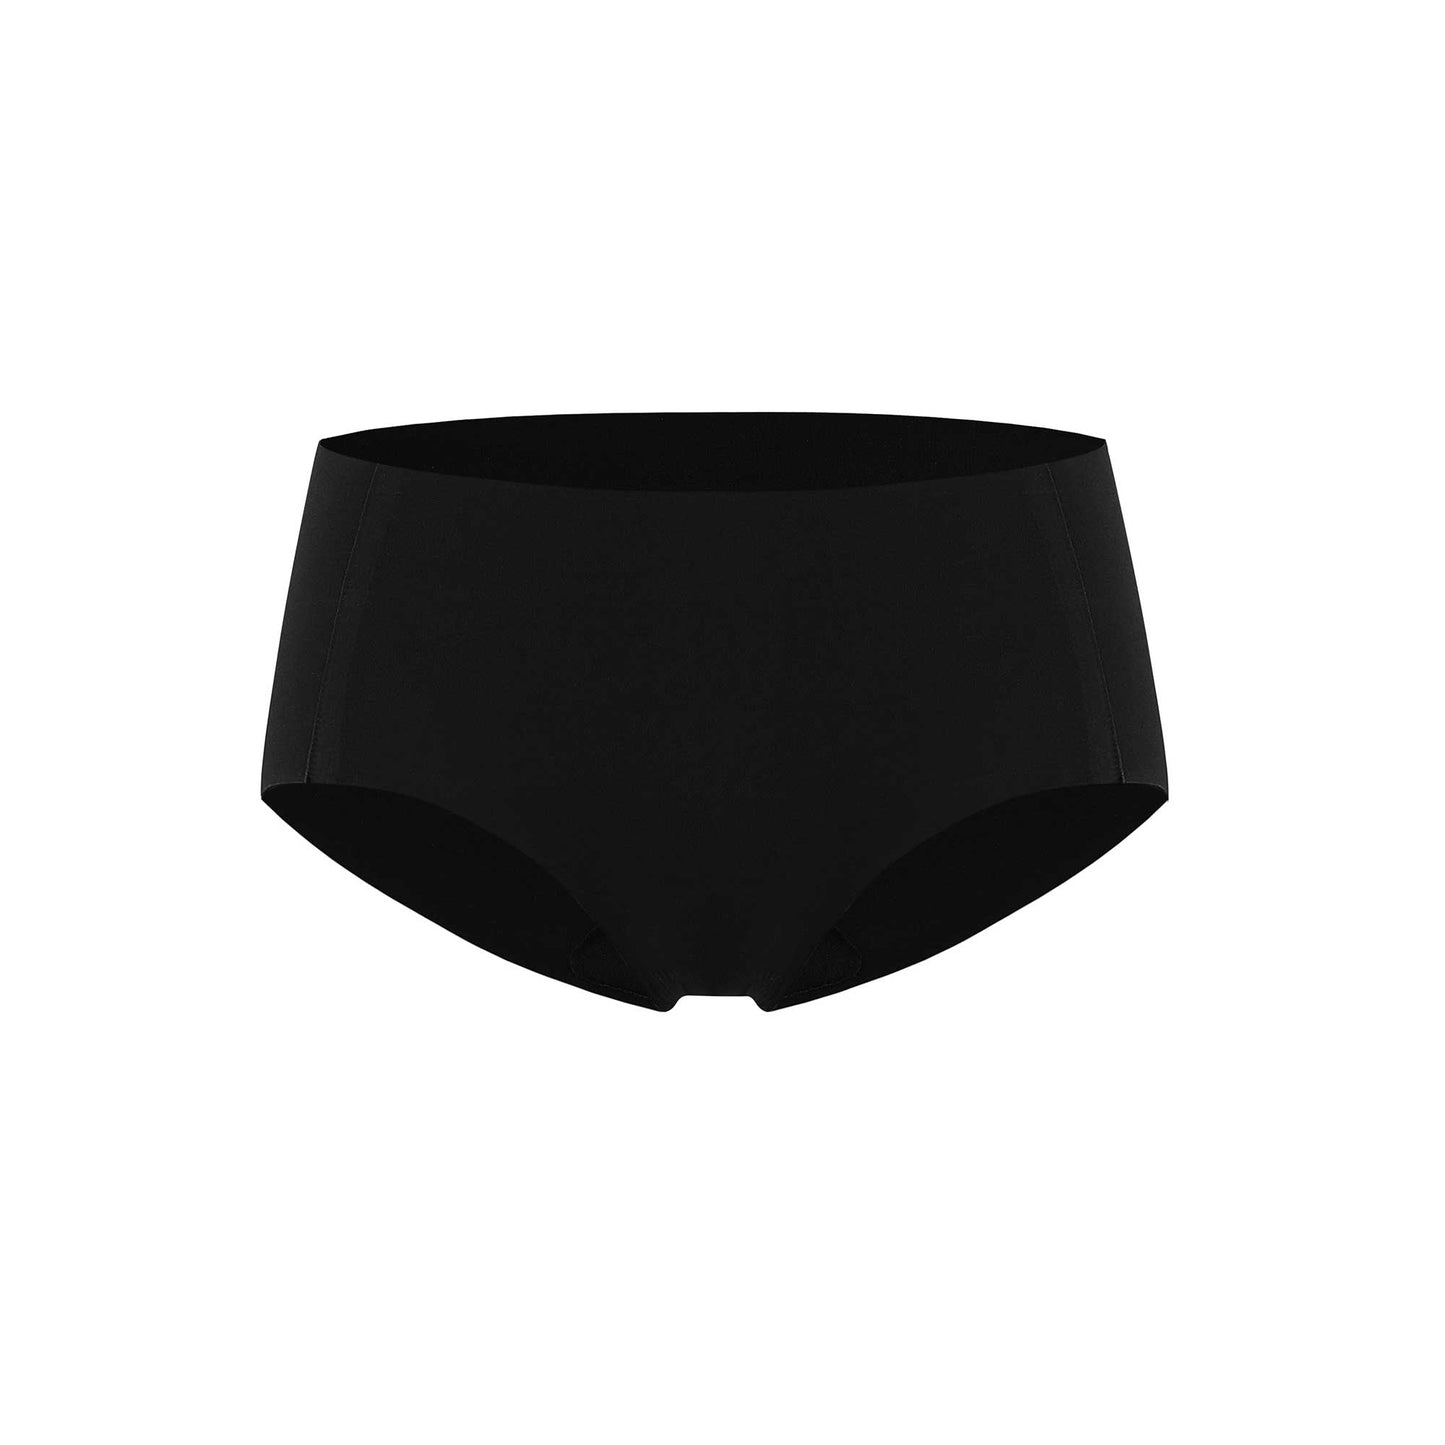 a black underwear